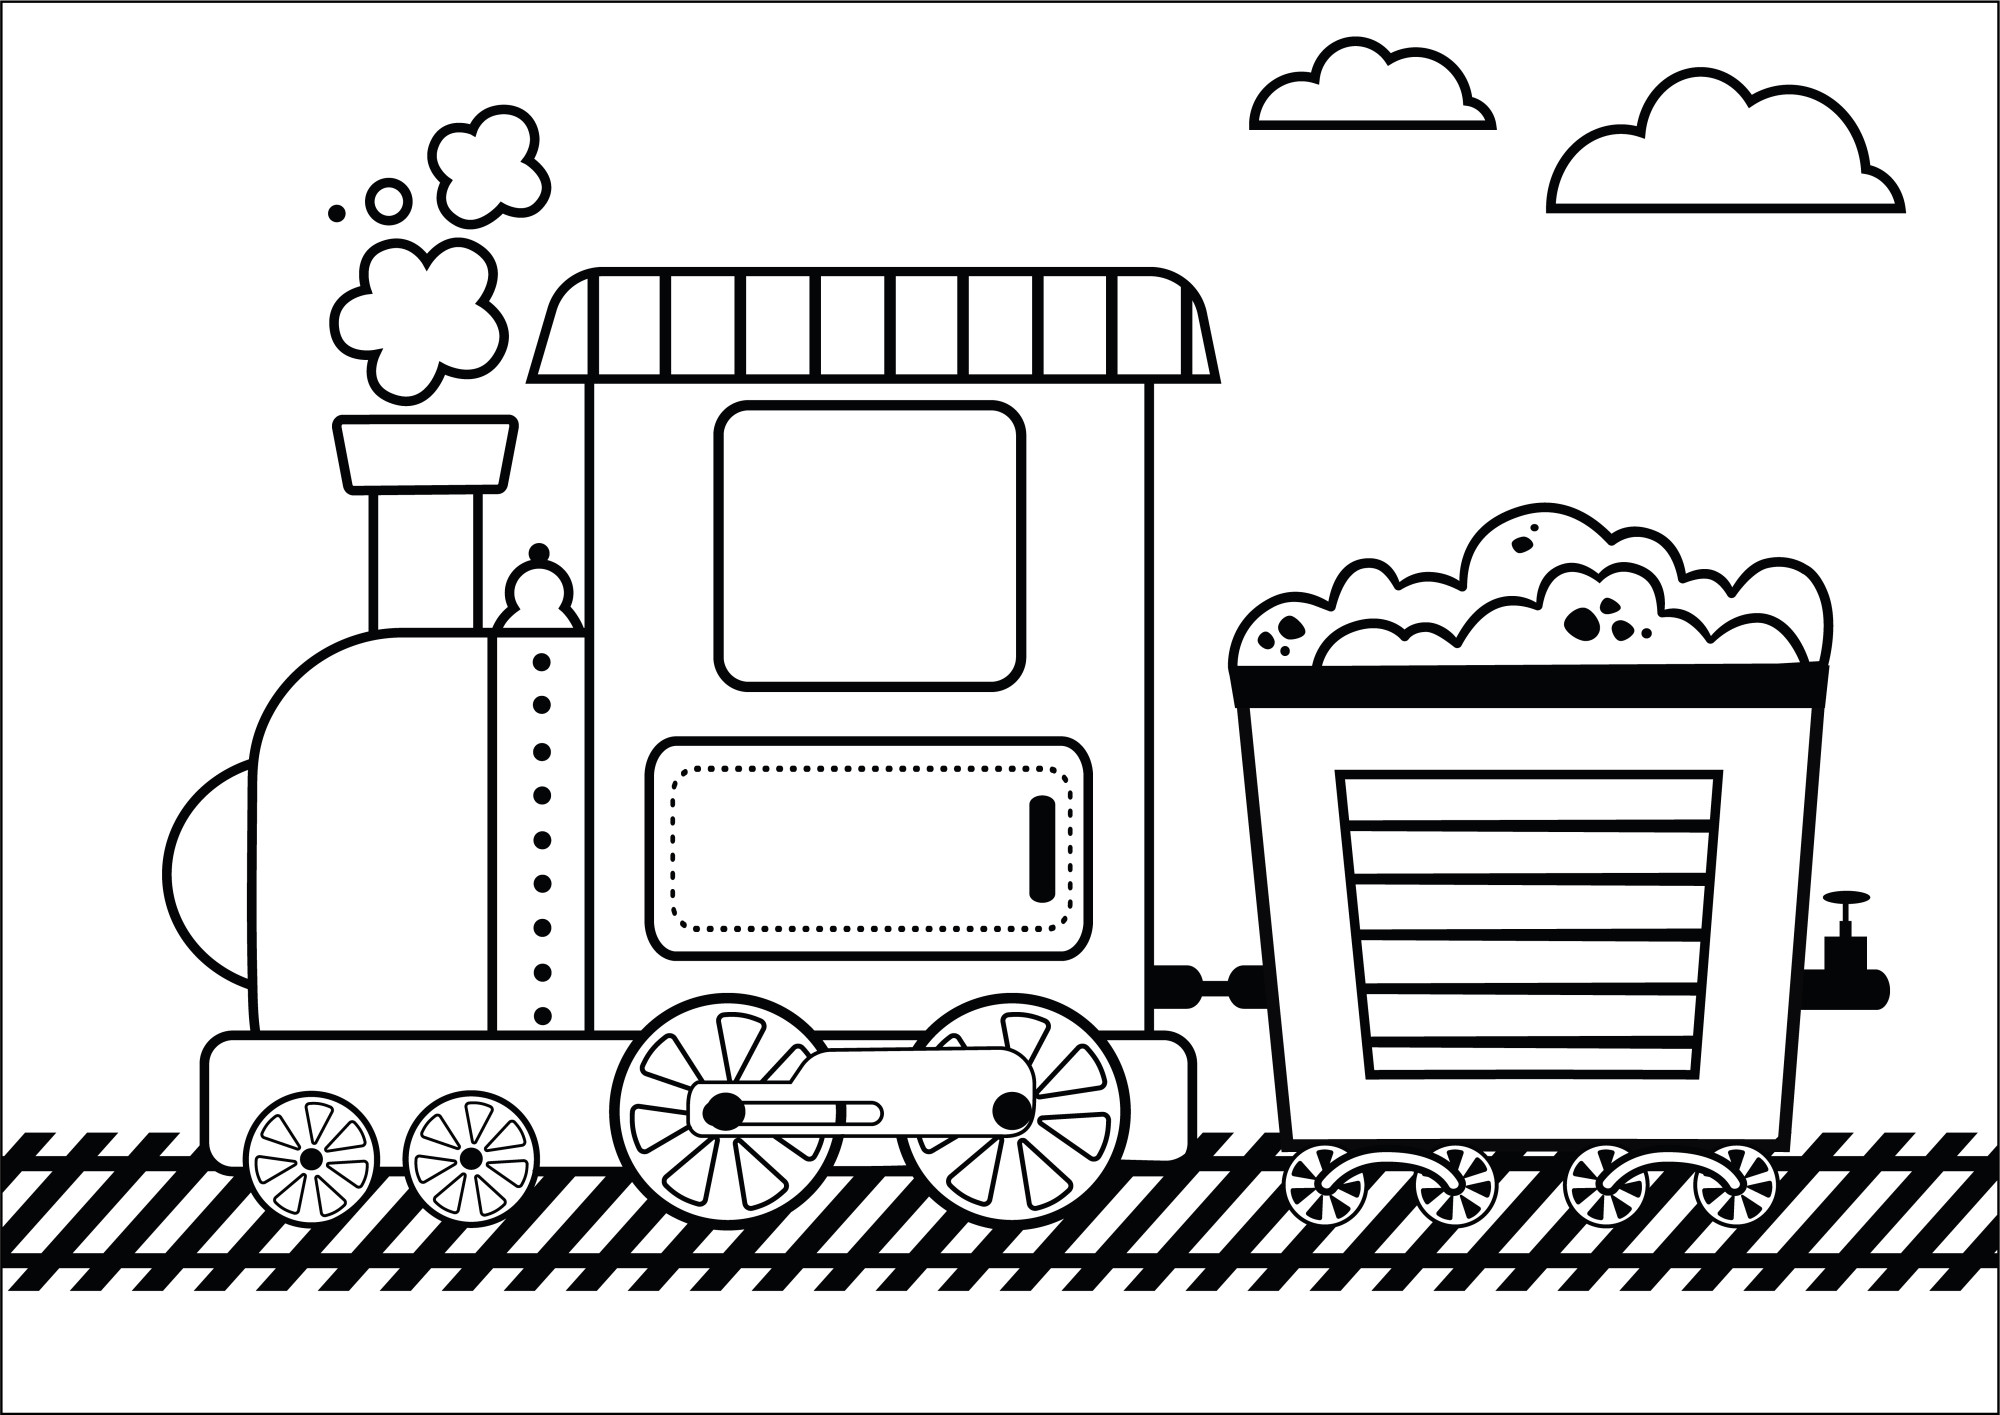 Раскраска для детей: поезд тепловоз с тележкой угля